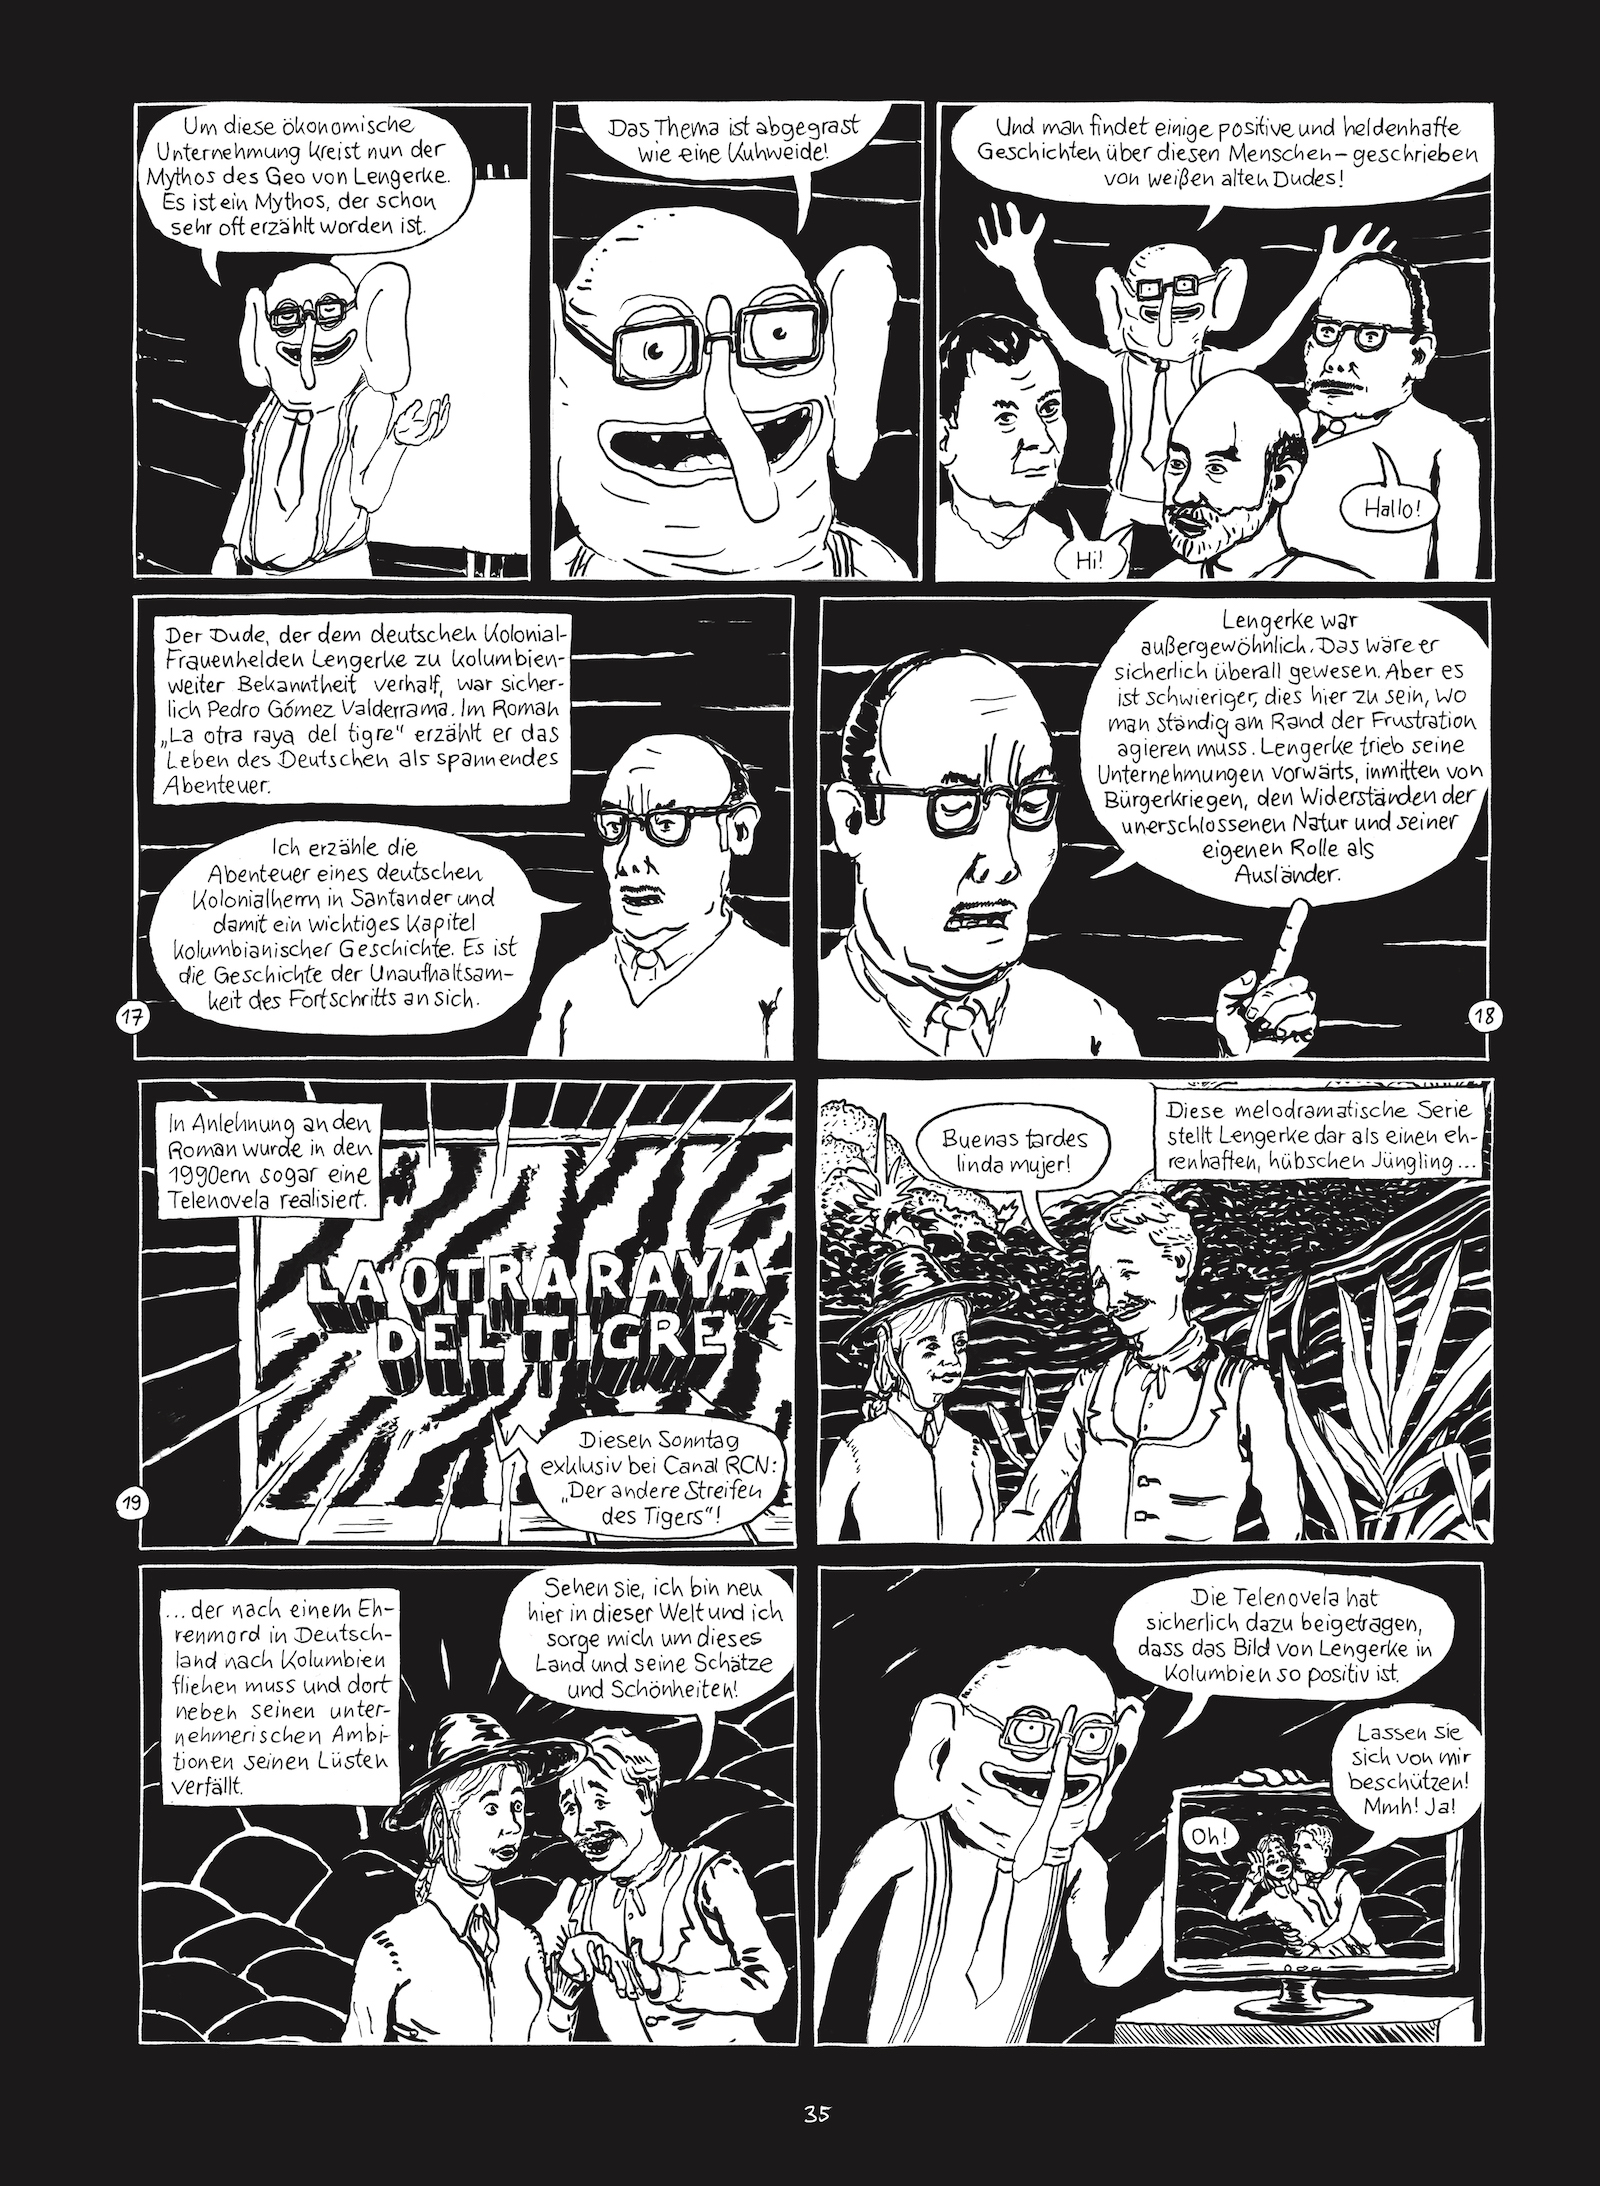 Seite 35 von Christian Diaz Orejarenas Comic "Otras Rayas"